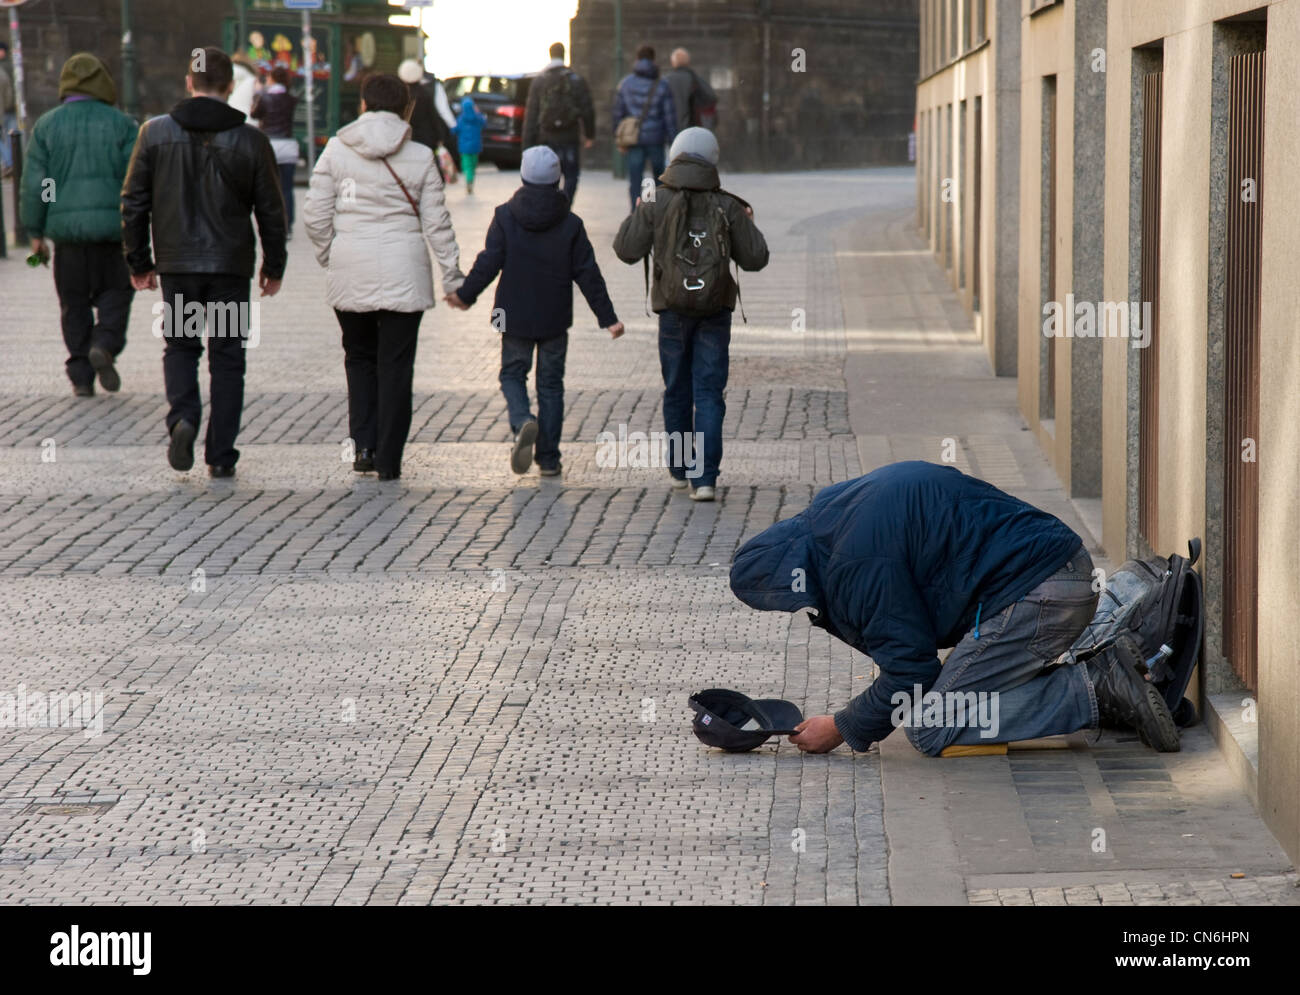 Prague. République tchèque. Avril 2012. Un sans-abri mendie dans la rue, les gens marchent par indifférent de son sort. Banque D'Images